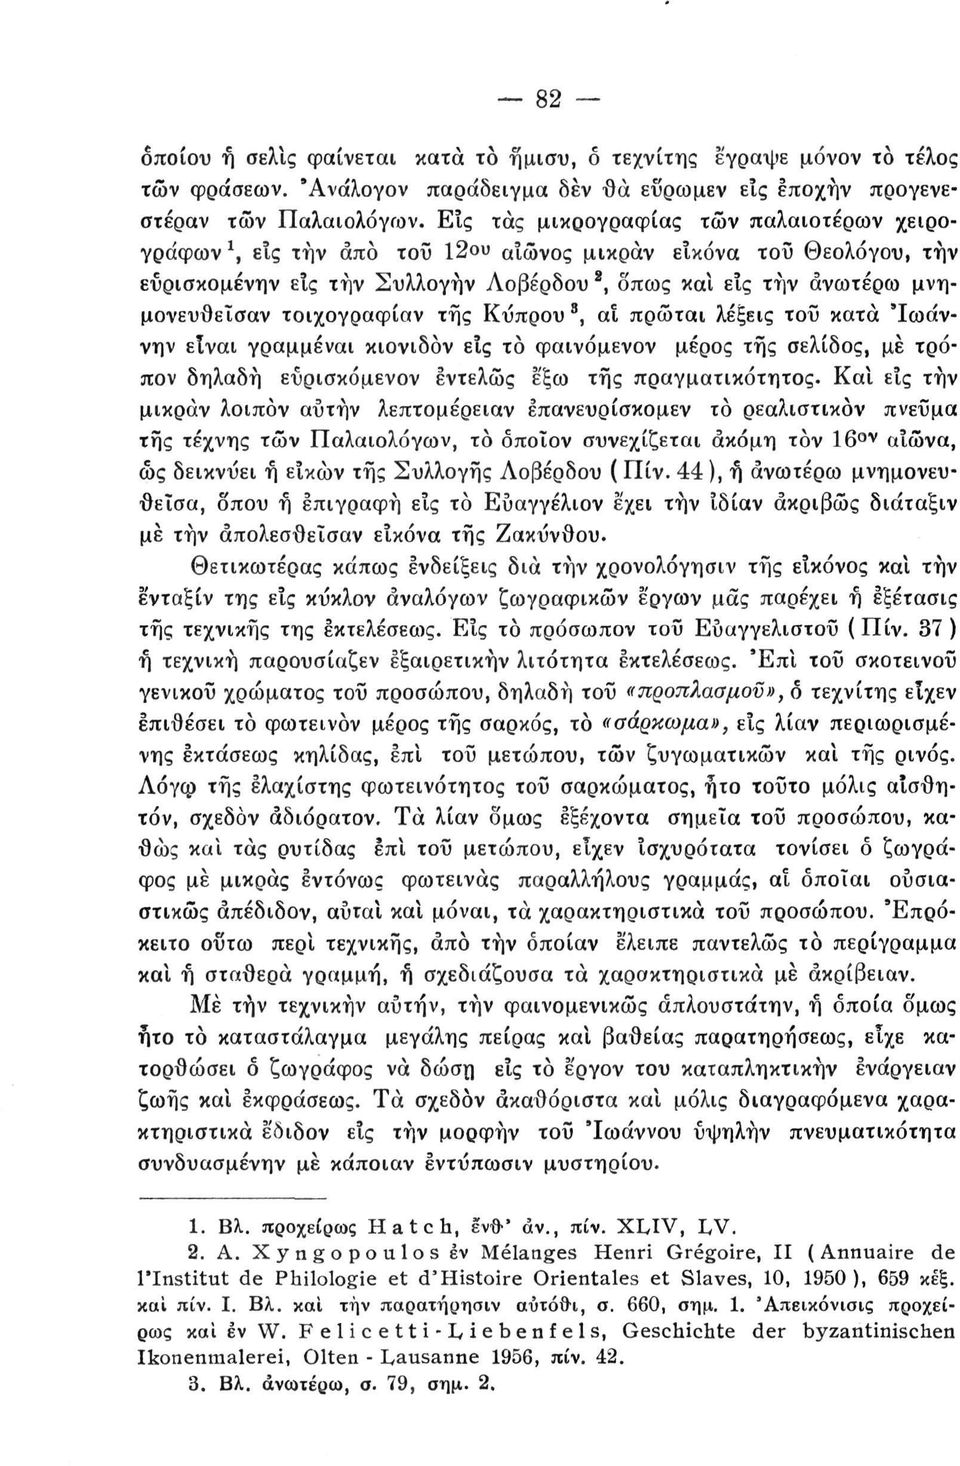 τοιχογραφίαν της Κύπρου 3, αί πρώται λέξεις τοΰ κατά Ίωάννην είναι γραμμέναι κιονιδόν εις το φαινόμενον μέρος της σελίδος, με τρόπον δηλαδή εΰρισκόμενον εντελώς έ'ξω της πραγματικότητος. Κα!